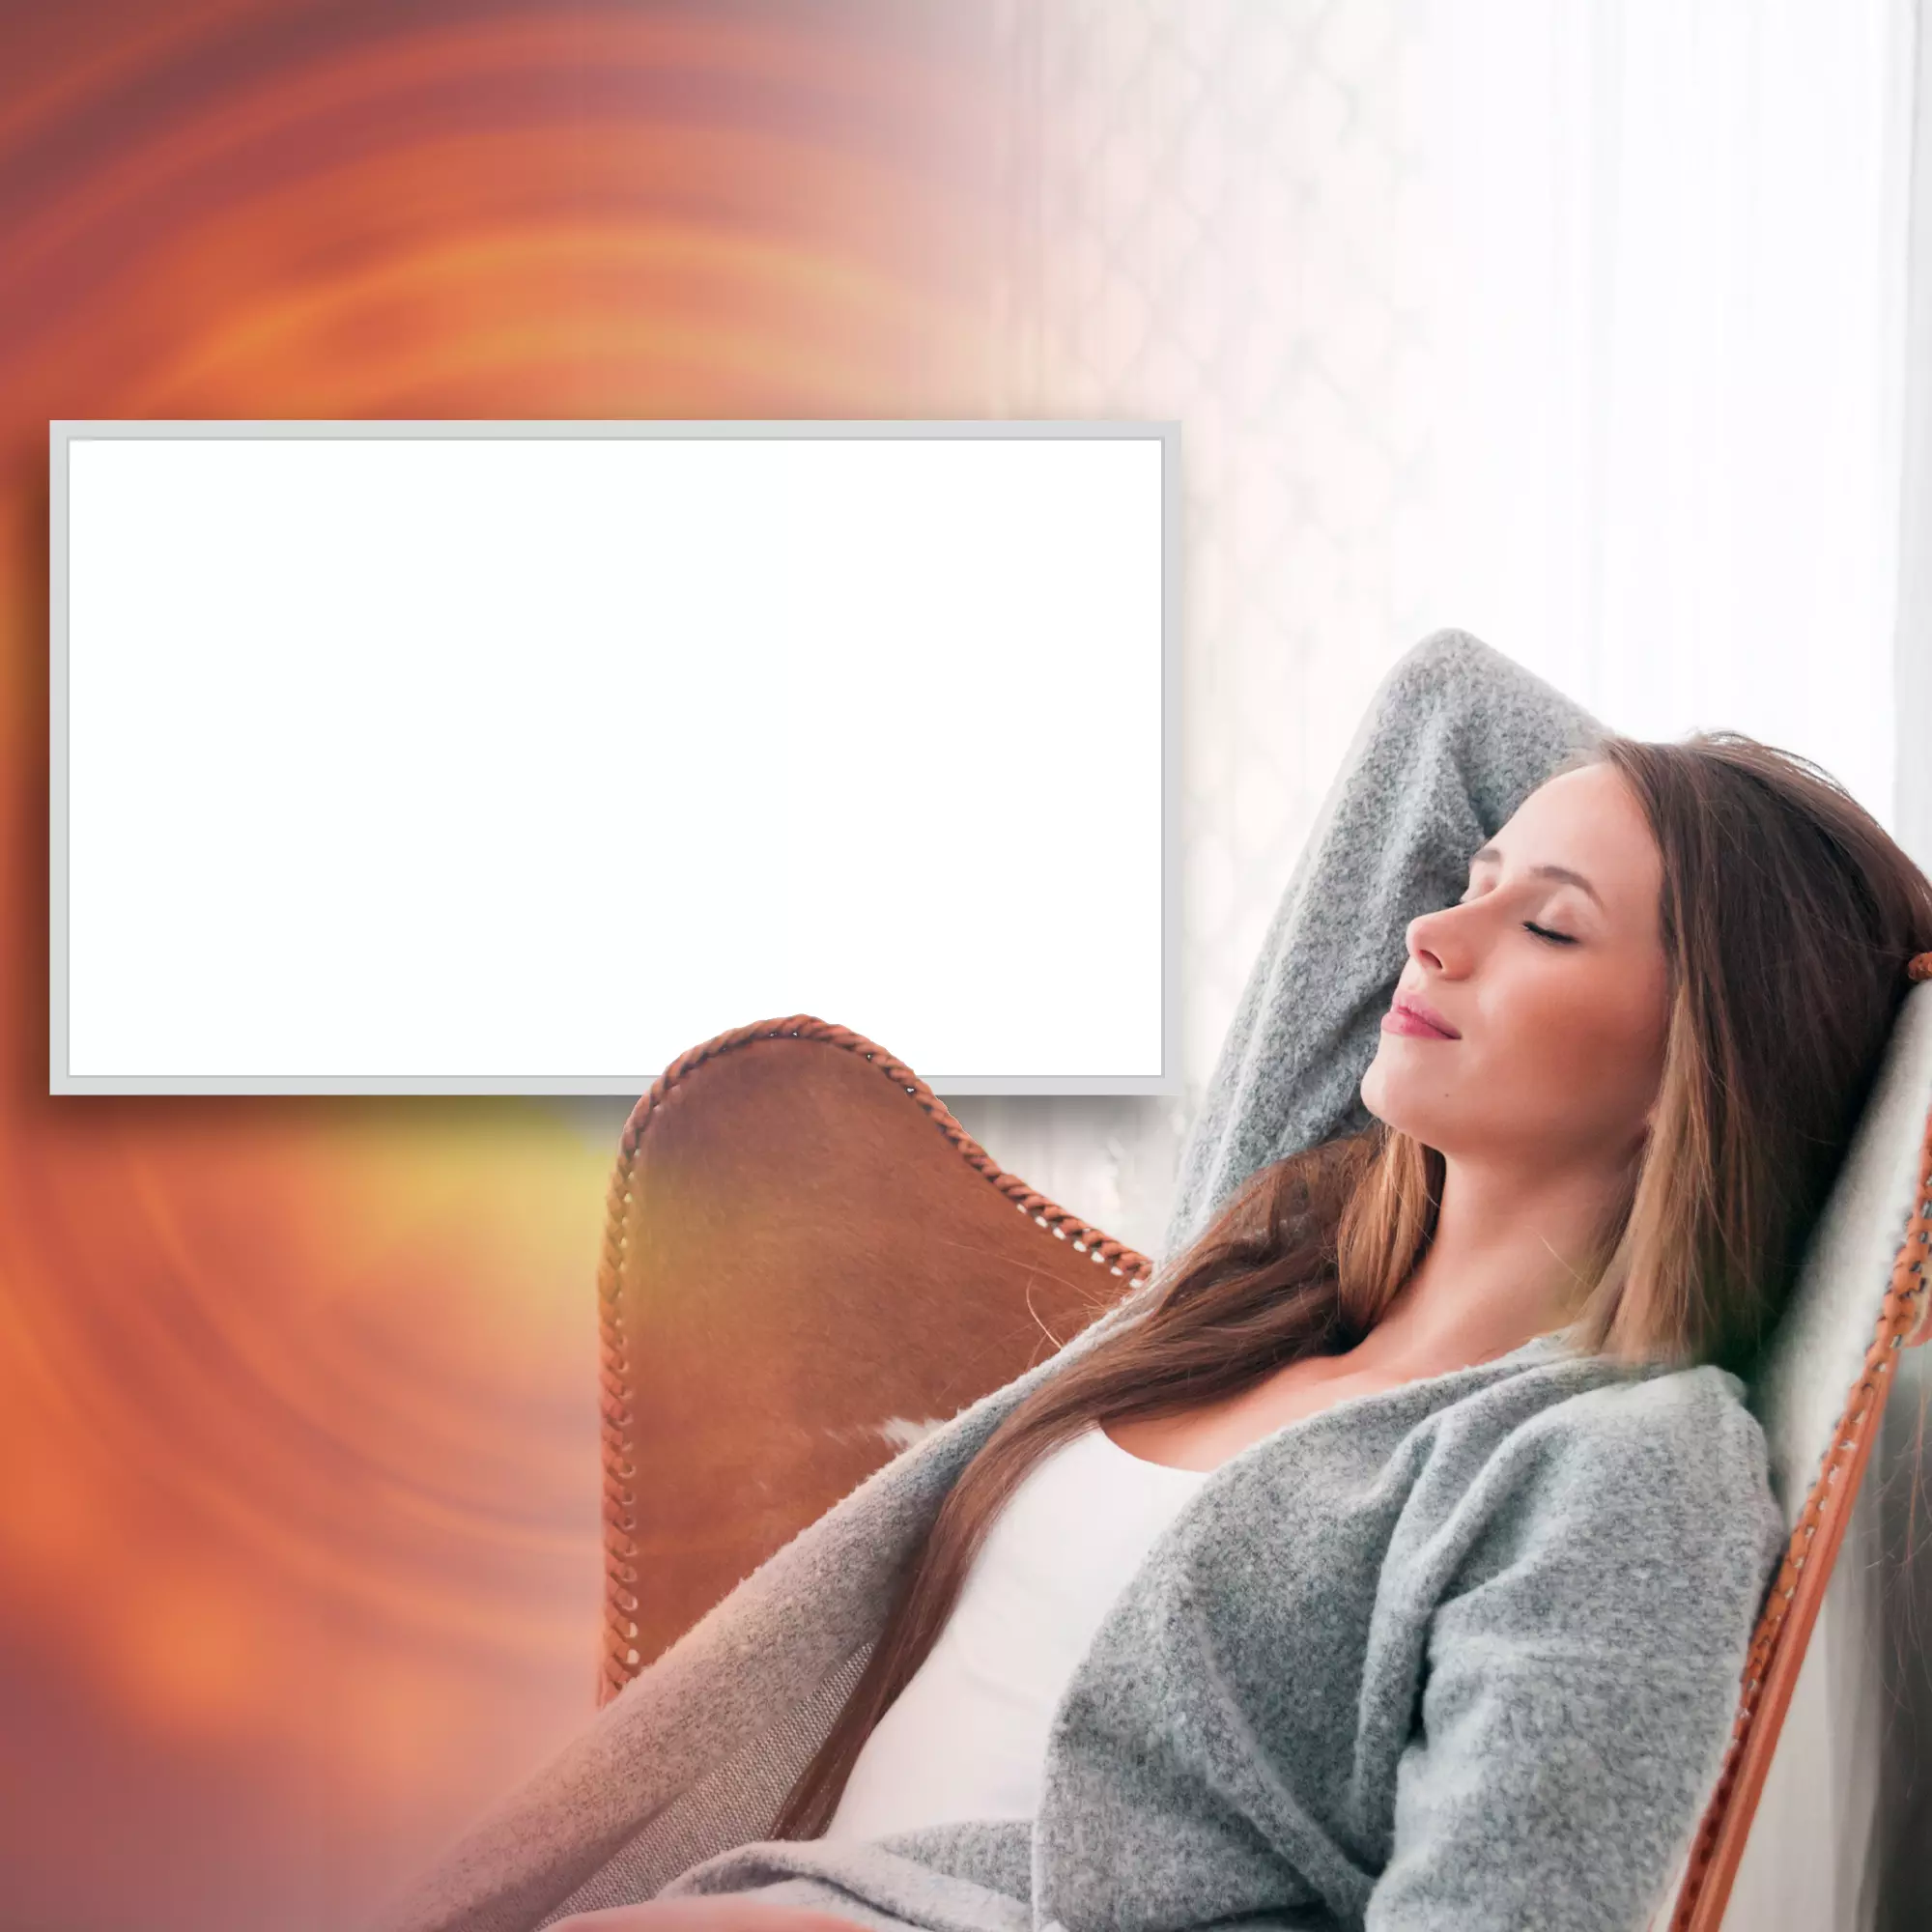 Infrarotheizkörper strahlt Wärme aus, Frau genießt diese schlafend im Sessel